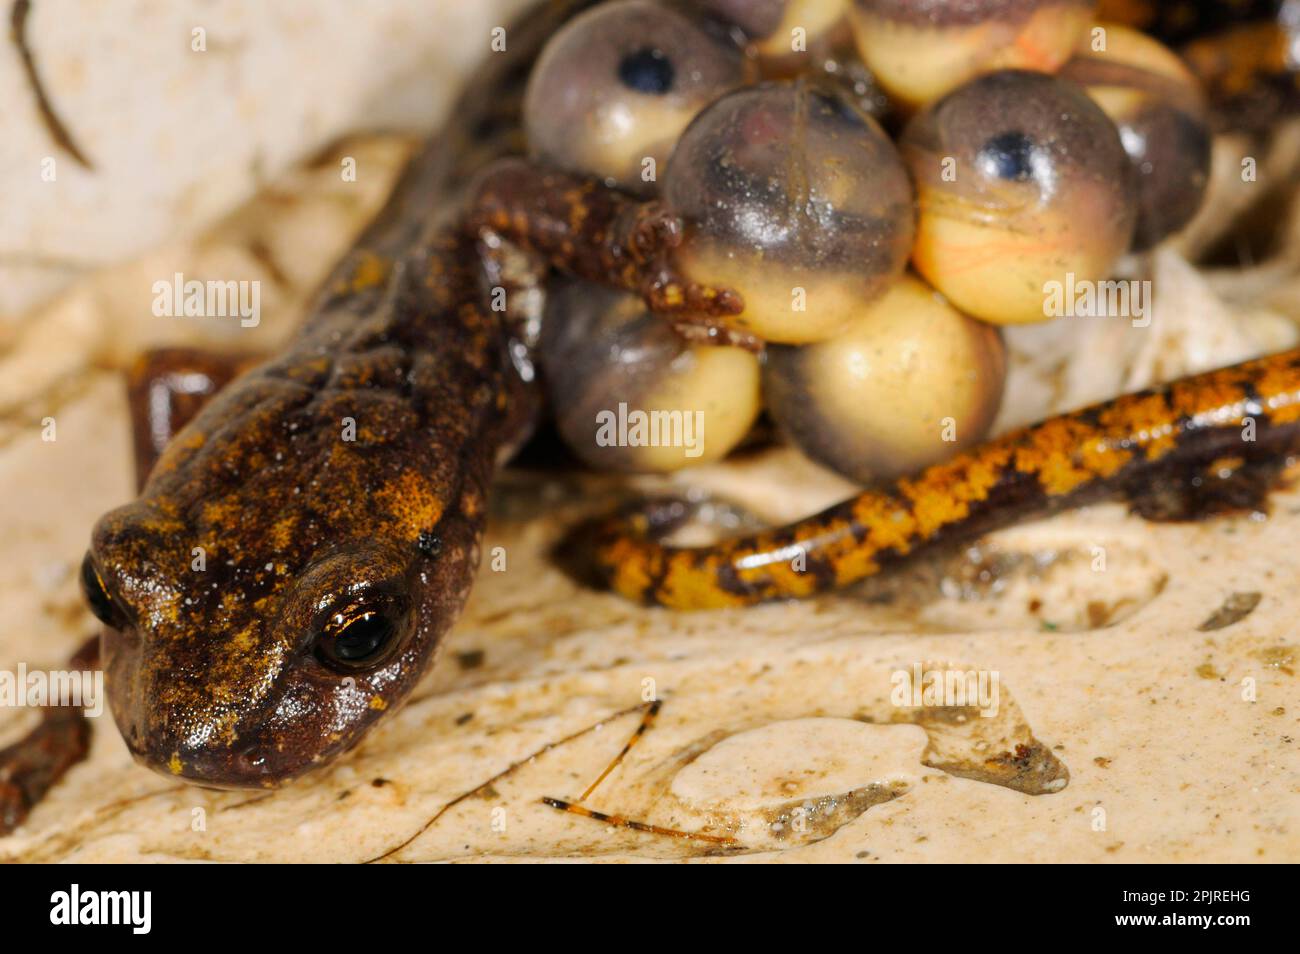 Grotta di Strinati Salamander (Speleomantes strinatii) femmina adulta, che protegge le uova durante lo sviluppo, embrioni con occhi visibili, Italia Foto Stock